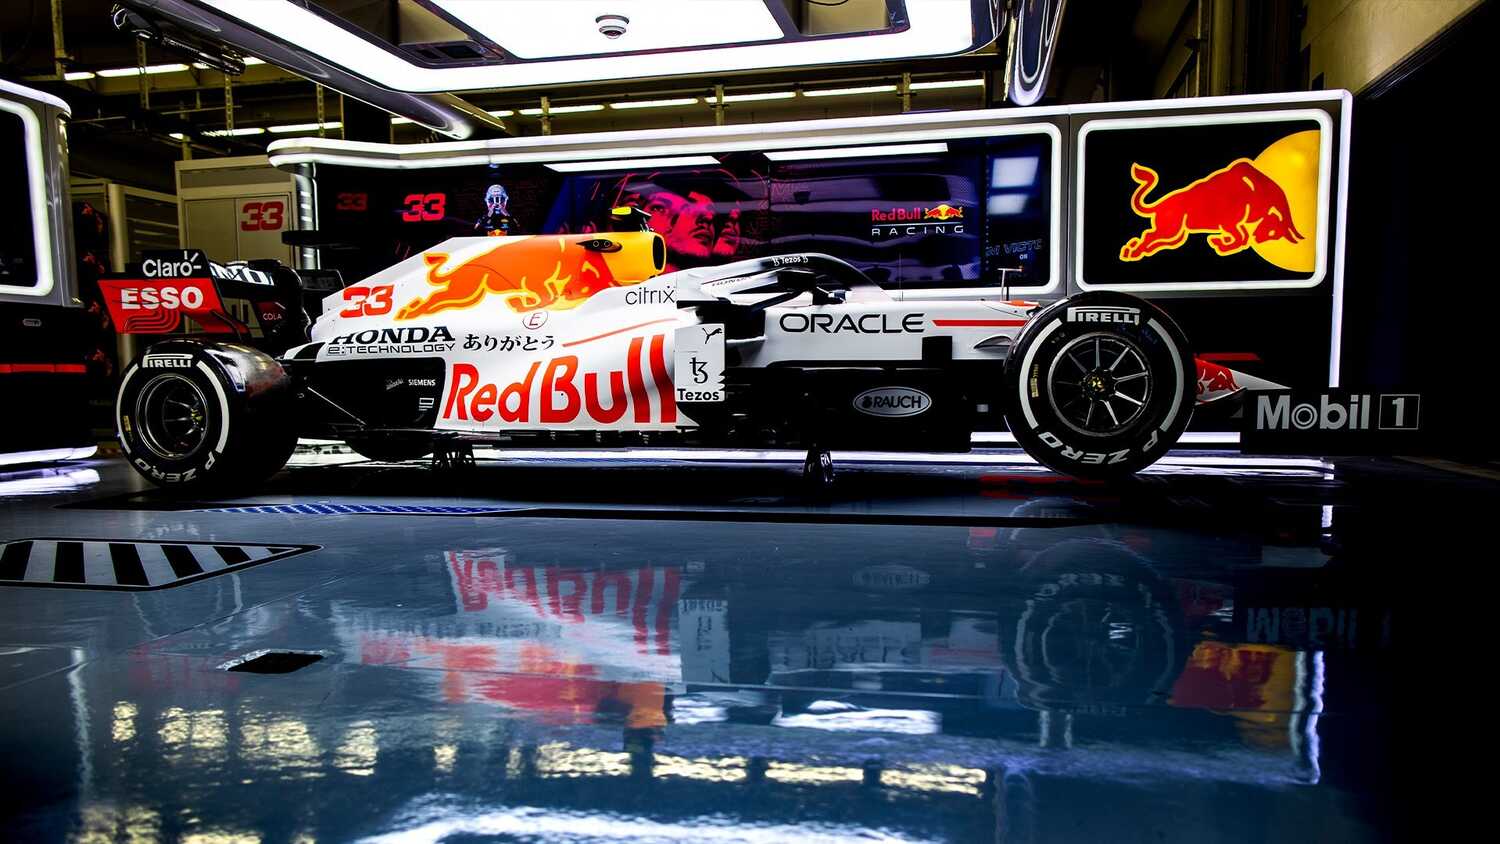 38+] Red Bull F1 2021 White Wallpapers - WallpaperSafari